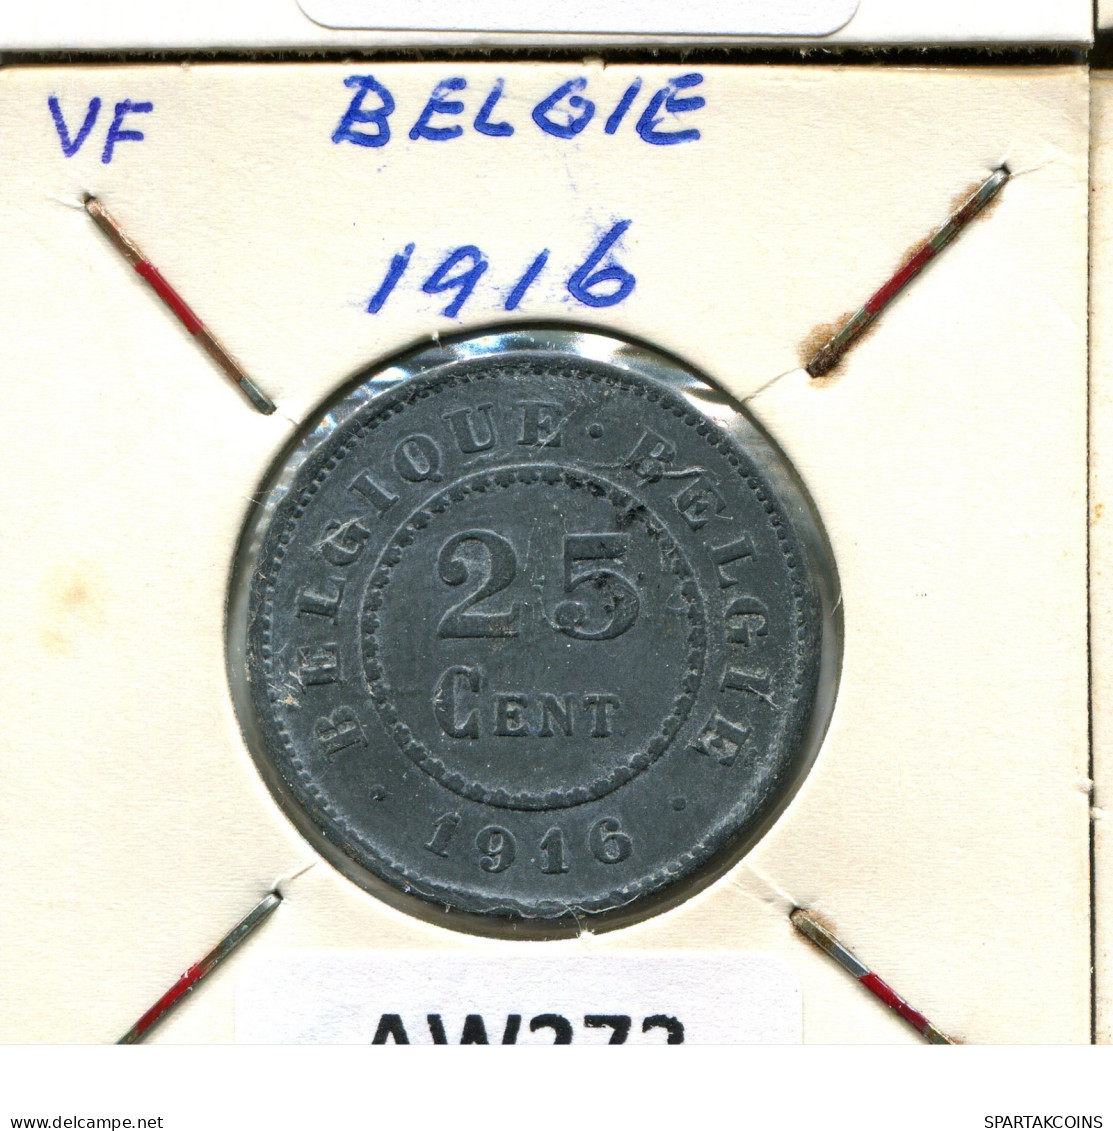 25 CENTIMES 1916 BELGIQUE-BELGIE BELGIEN BELGIUM Münze #AW272.D.A - 25 Cent